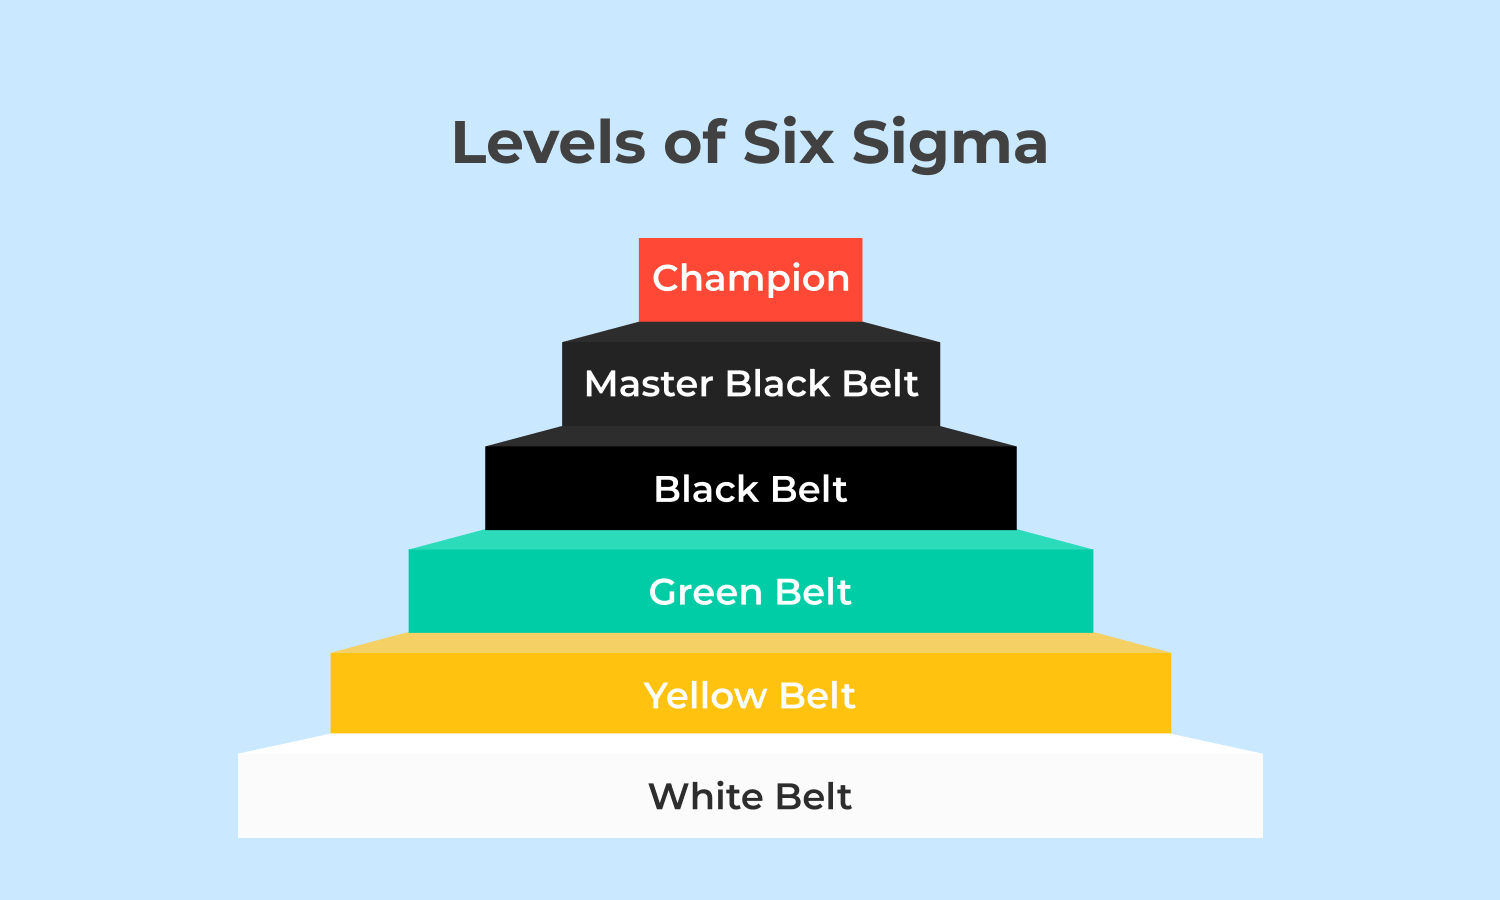 Pol Christchurch Teoretisk Six Sigma Belt Levels Explained - Sixsigma DSI